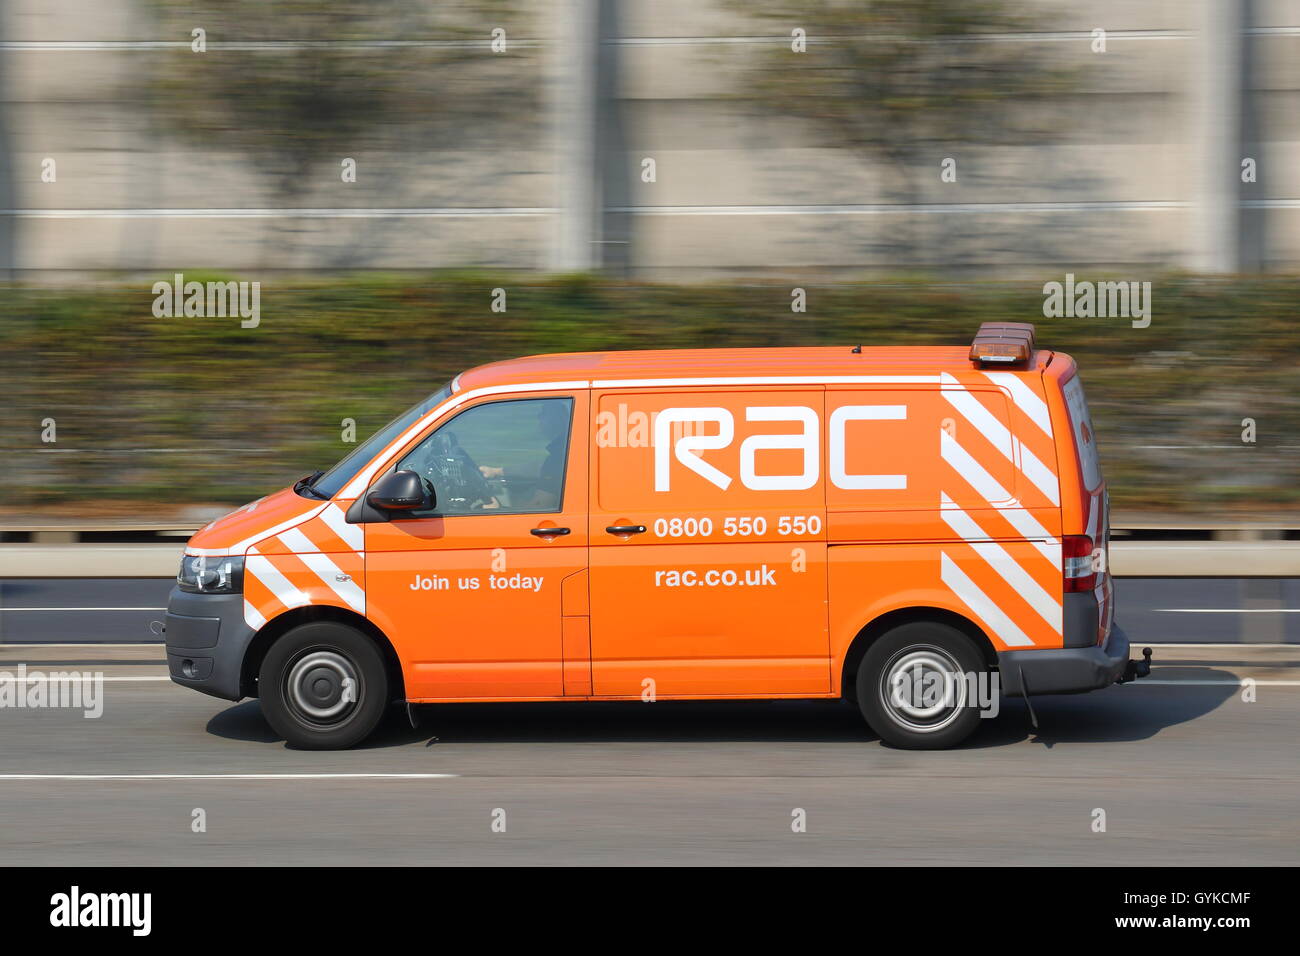 Sauvetage RAC van près de l'aéroport Heathrow de Londres, UK Banque D'Images